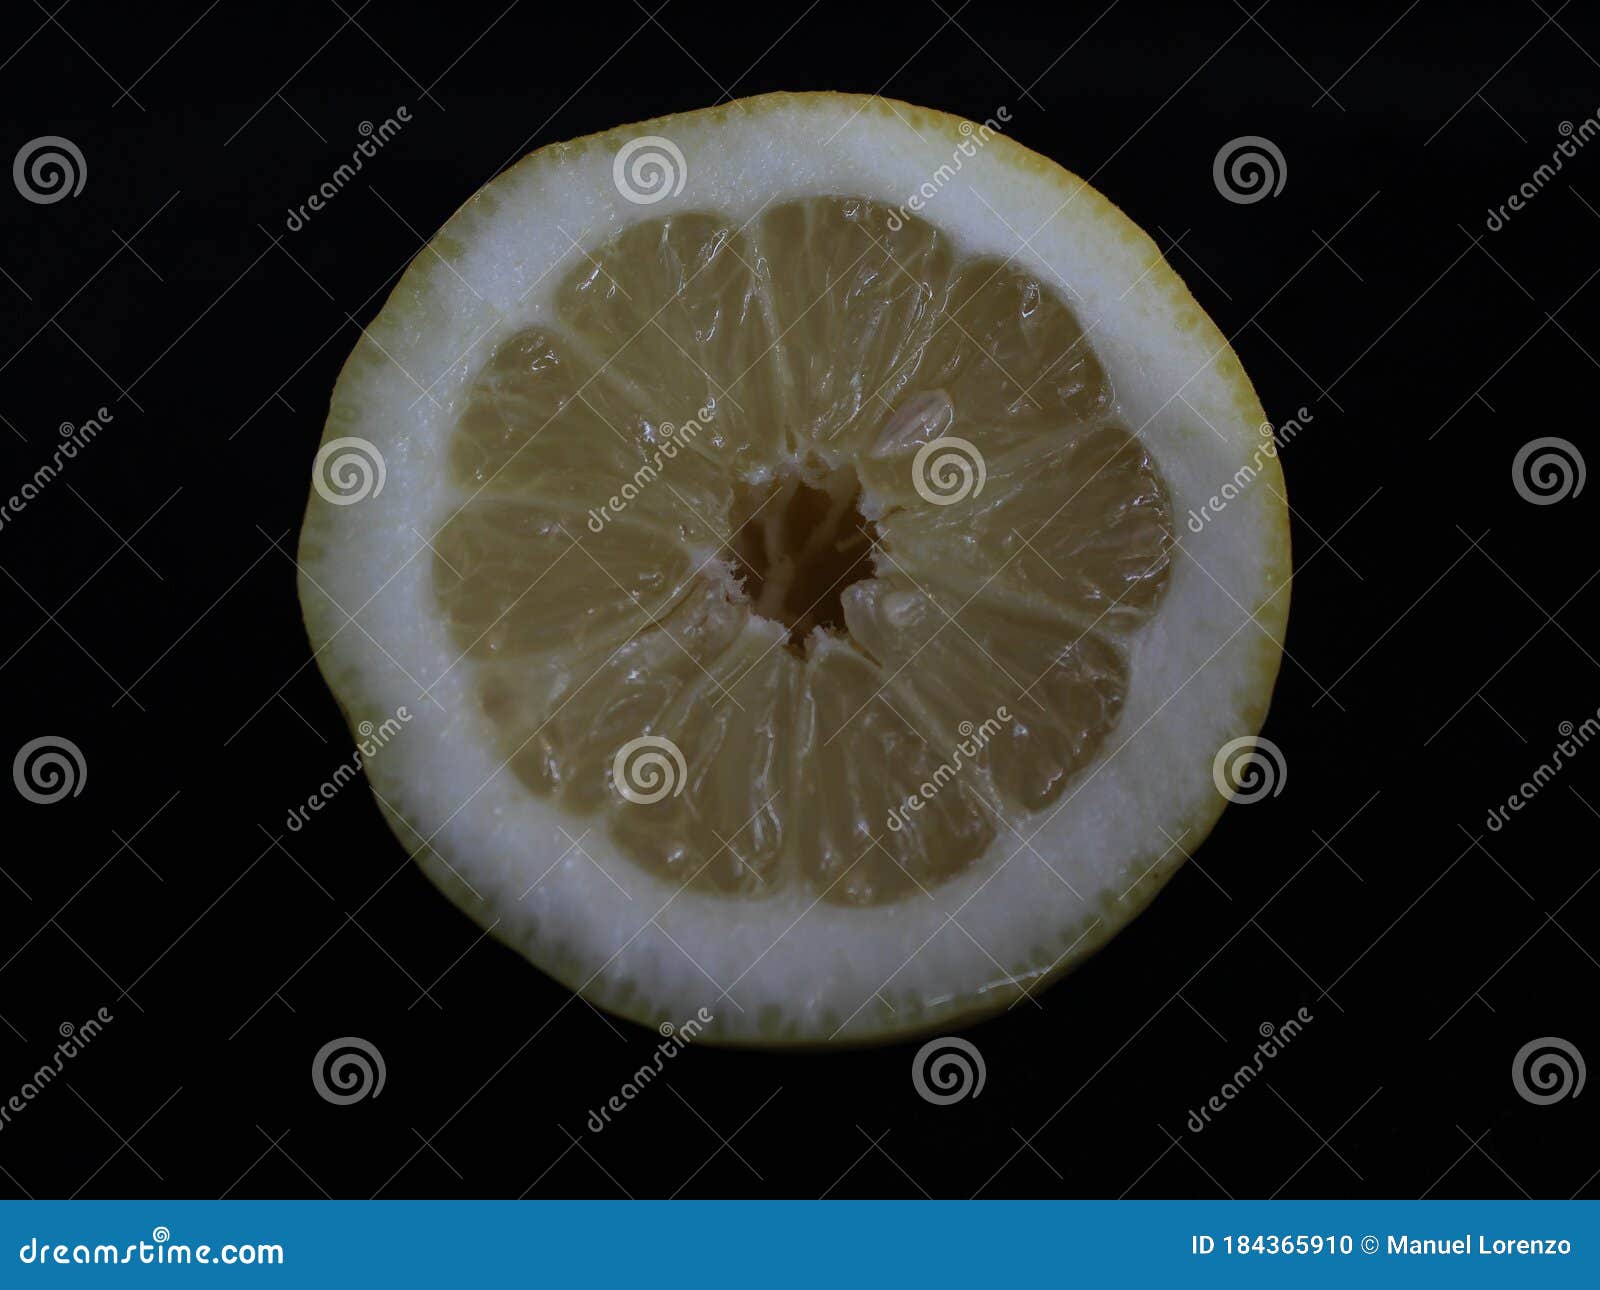 lemon acid yellow citrus fruit natural vitamin